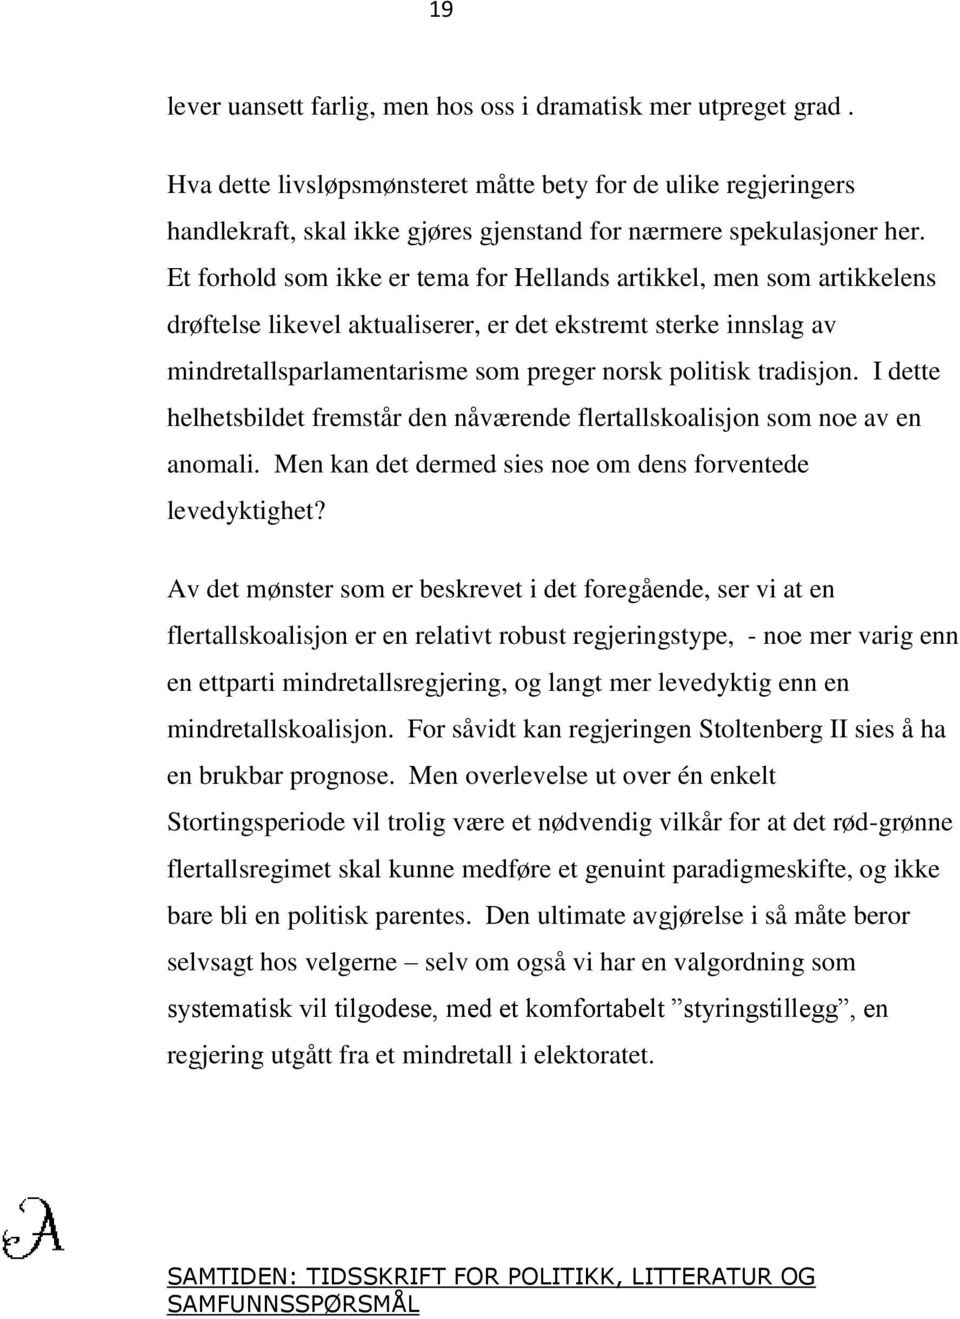 Et forhold som ikke er tema for Hellands artikkel, men som artikkelens drøftelse likevel aktualiserer, er det ekstremt sterke innslag av mindretallsparlamentarisme som preger norsk politisk tradisjon.